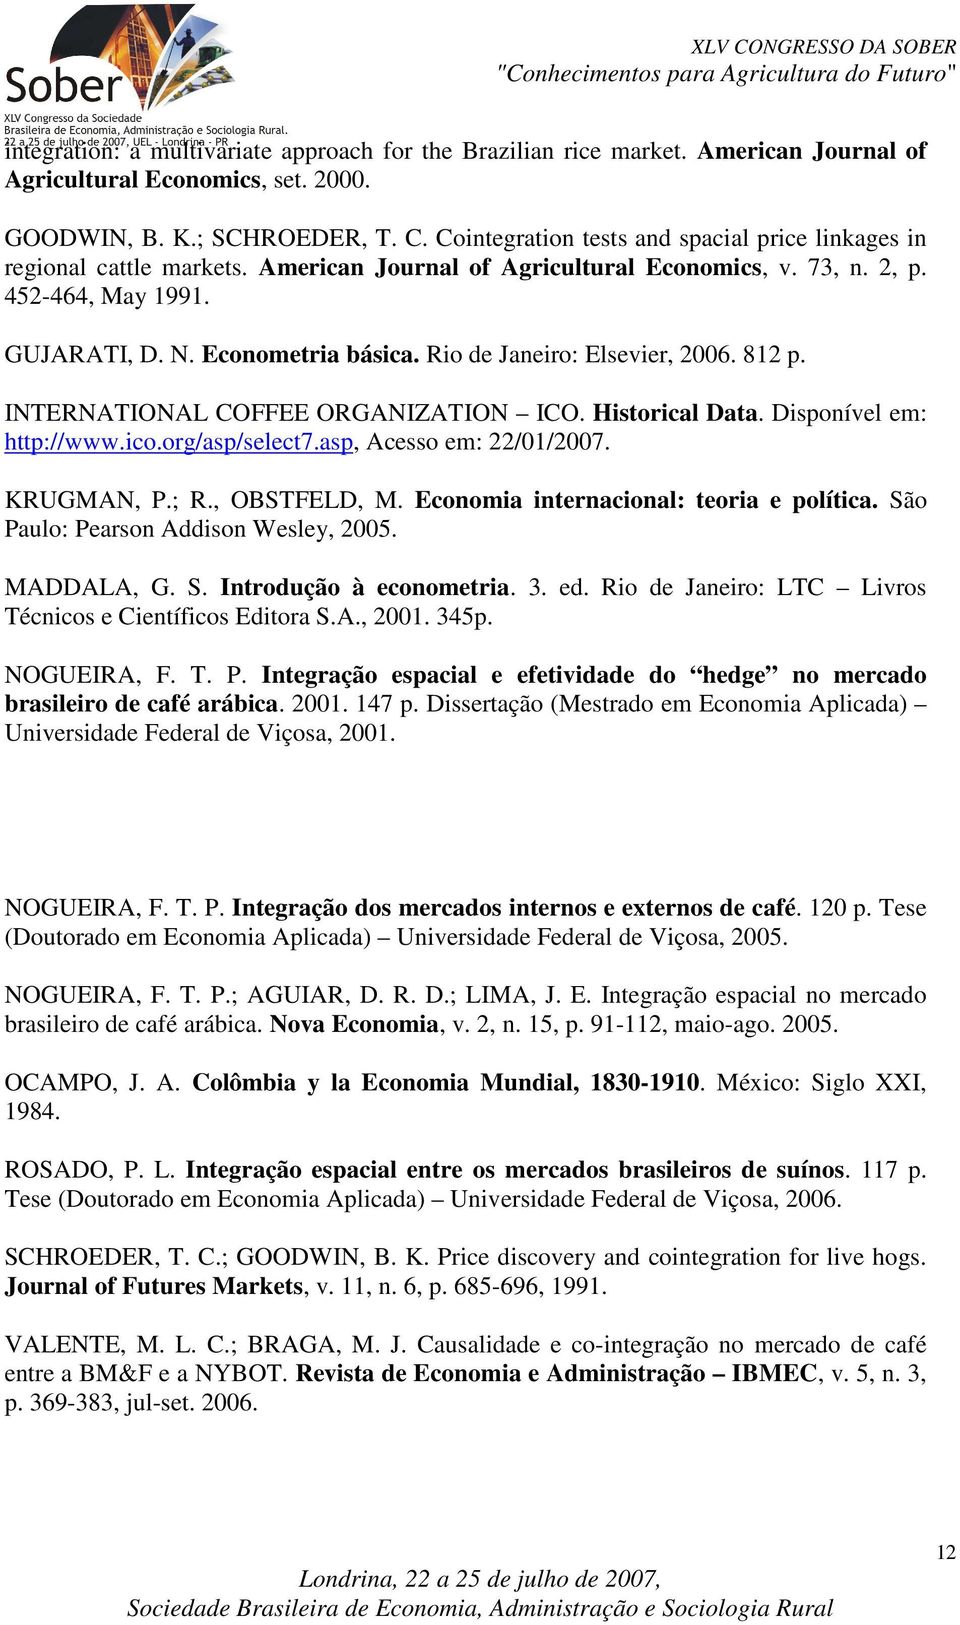 Rio de Janeiro: Elsevier, 2006. 812 p. INTERNATIONAL COFFEE ORGANIZATION ICO. Hisorical Daa. Disponível em: hp://www.ico.org/asp/selec7.asp, Acesso em: 22/01/2007. KRUGMAN, P.; R., OBSTFELD, M.